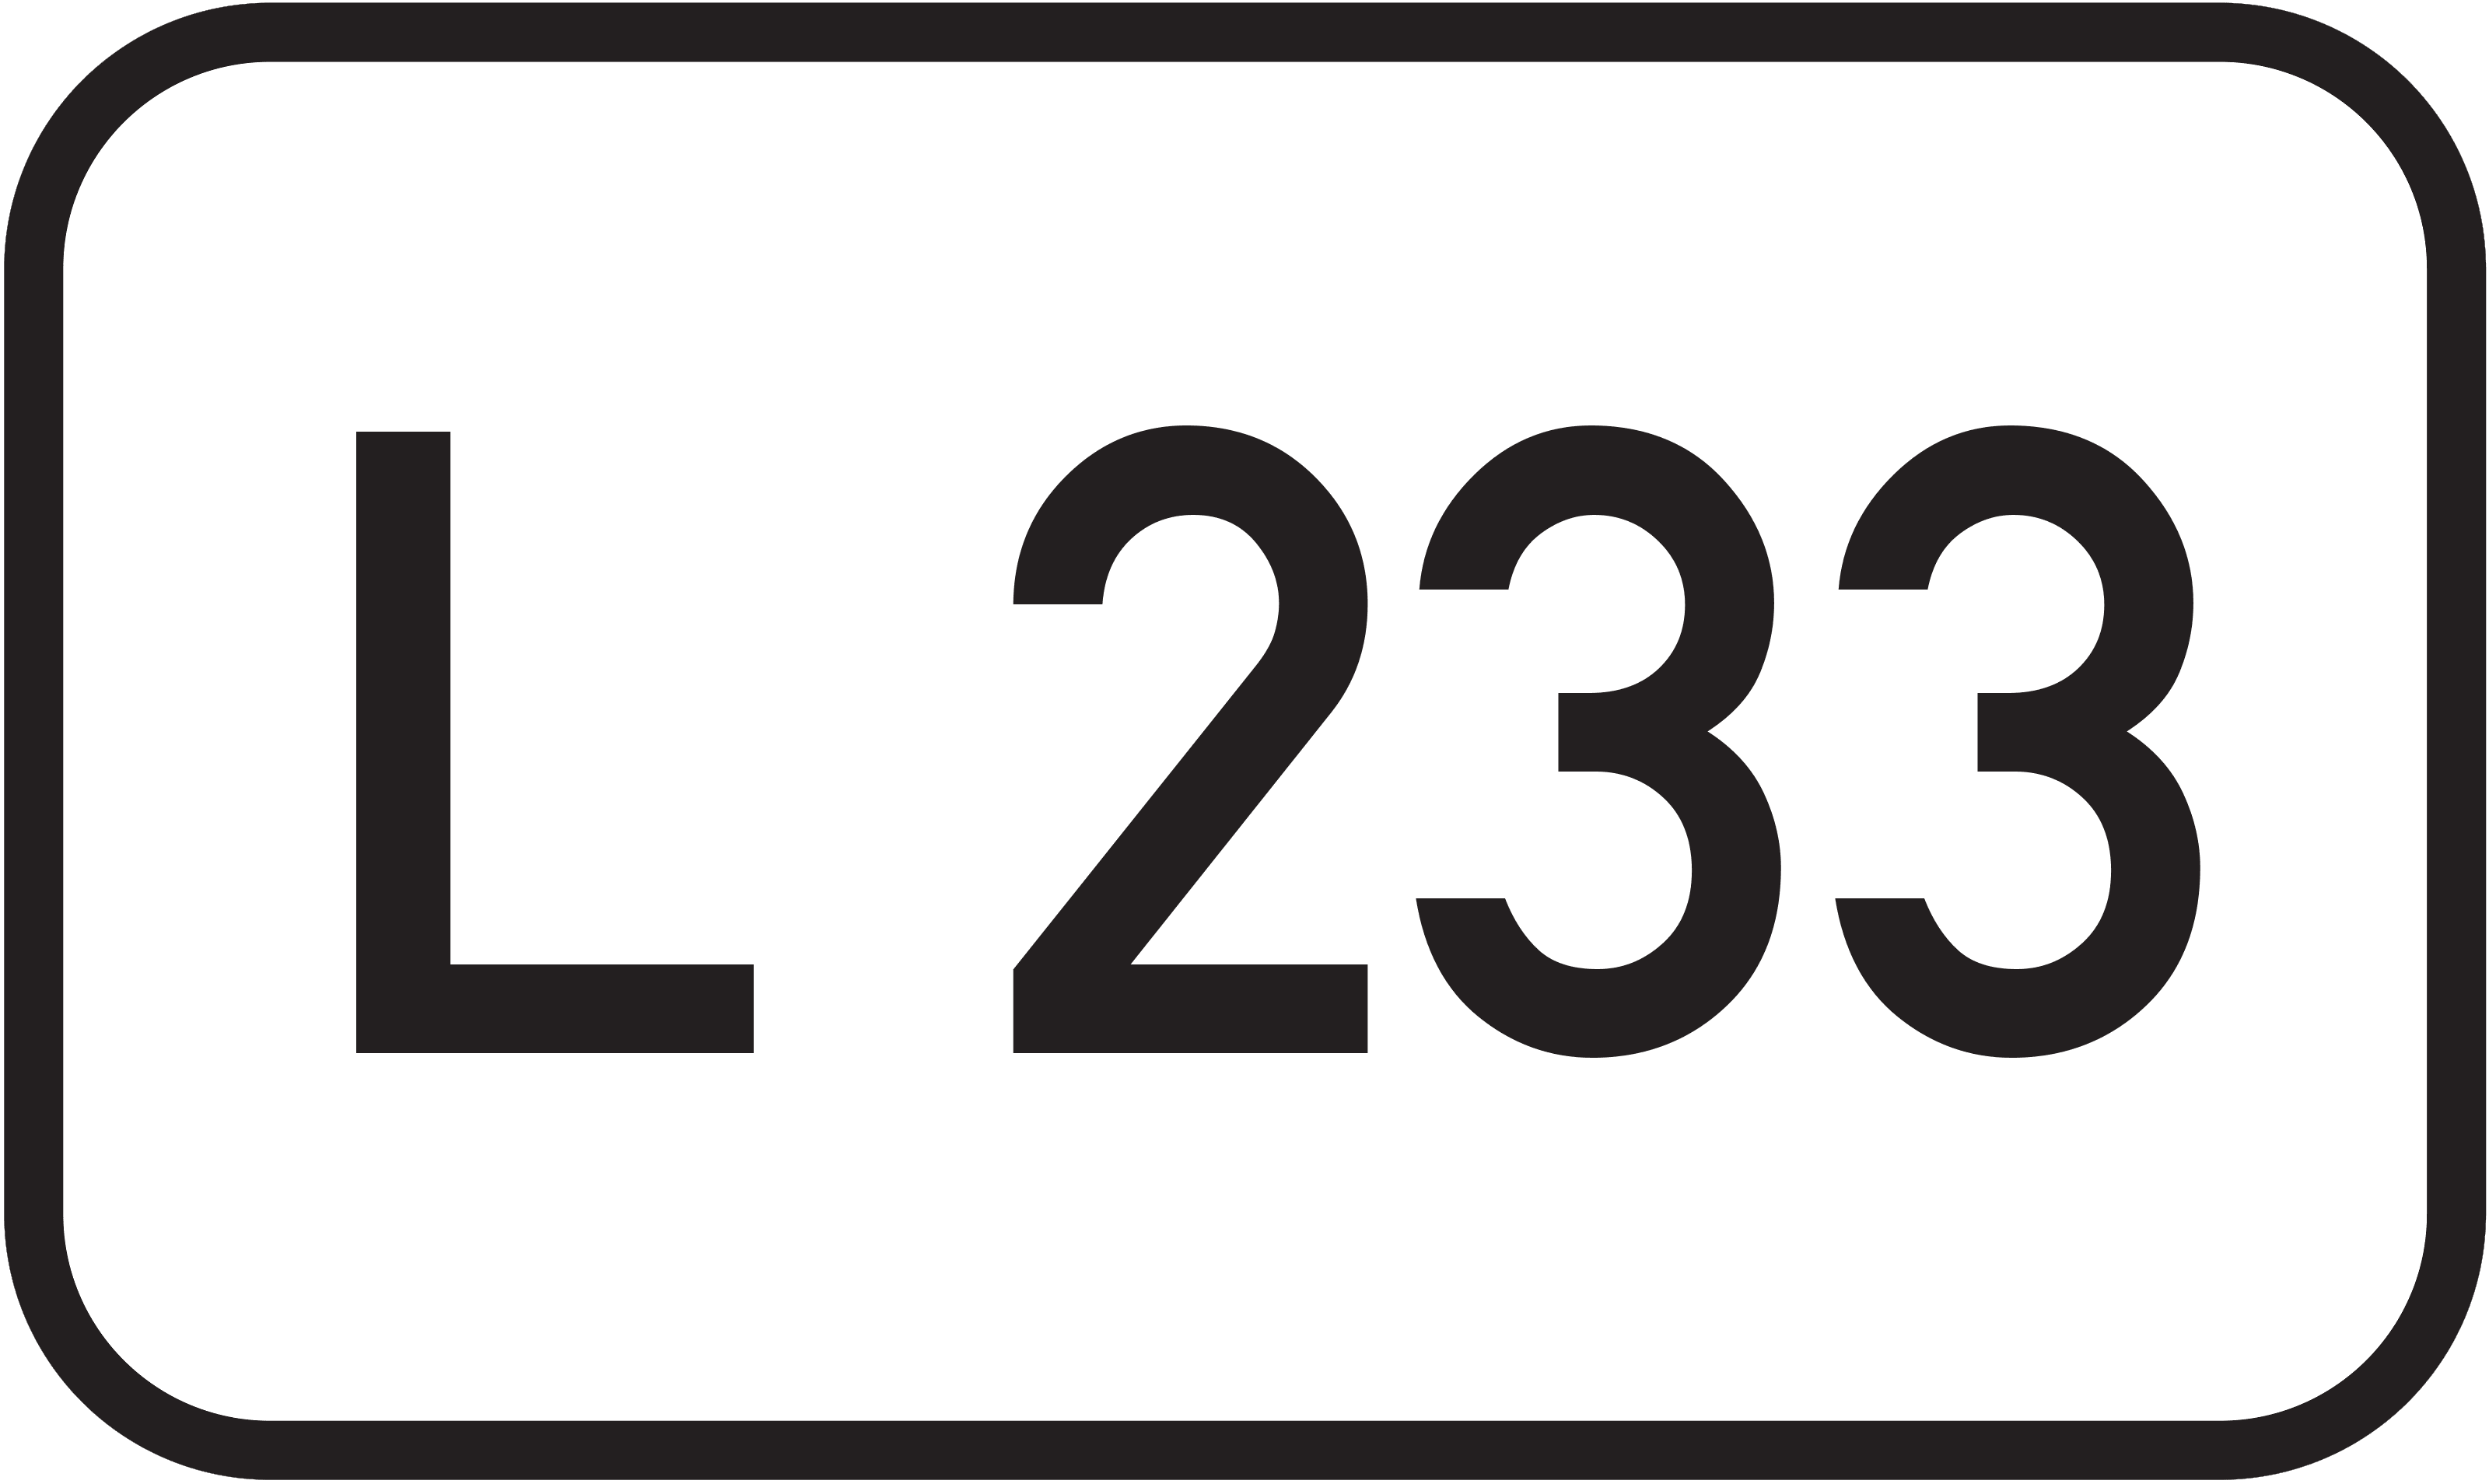 Landesstraße L 233